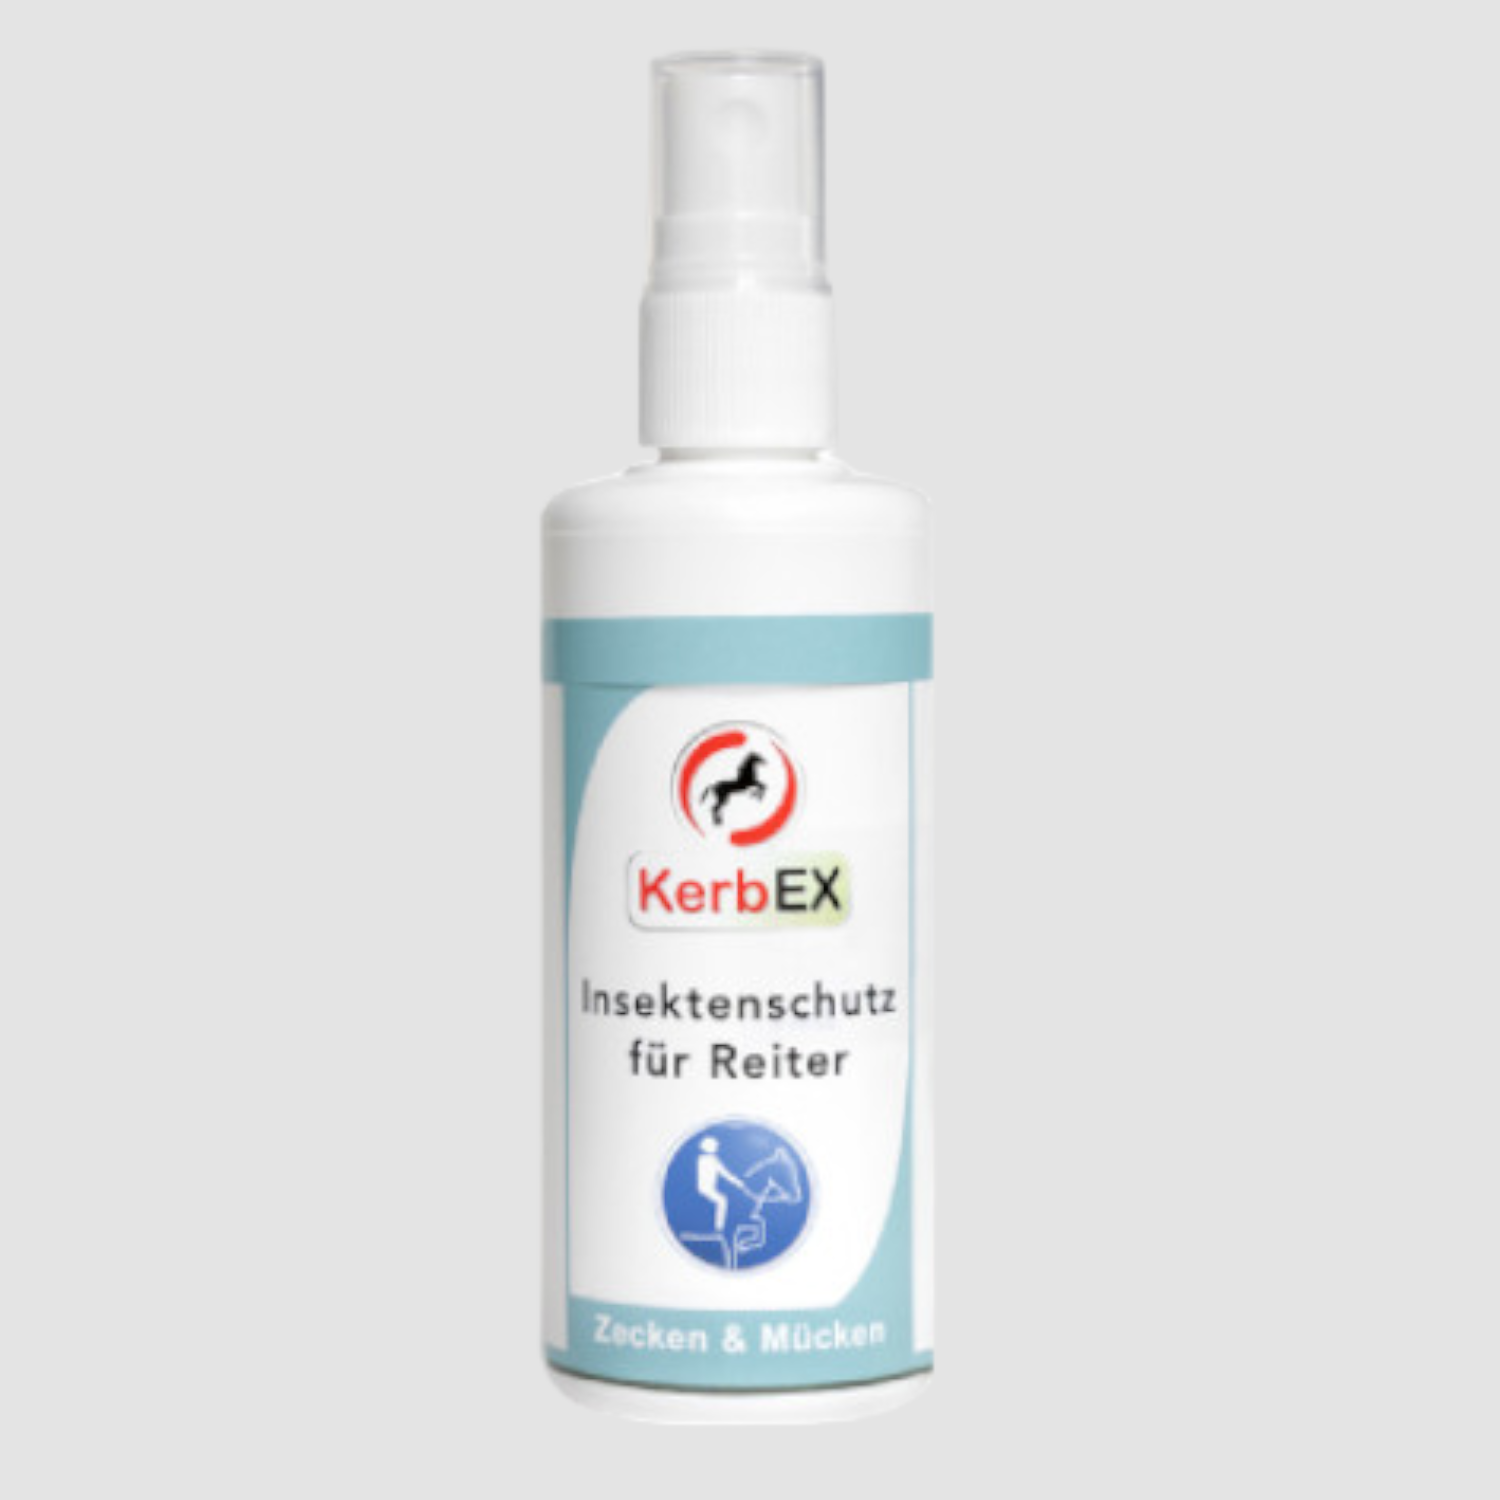 KerbEX Insektenschutz für Reiter